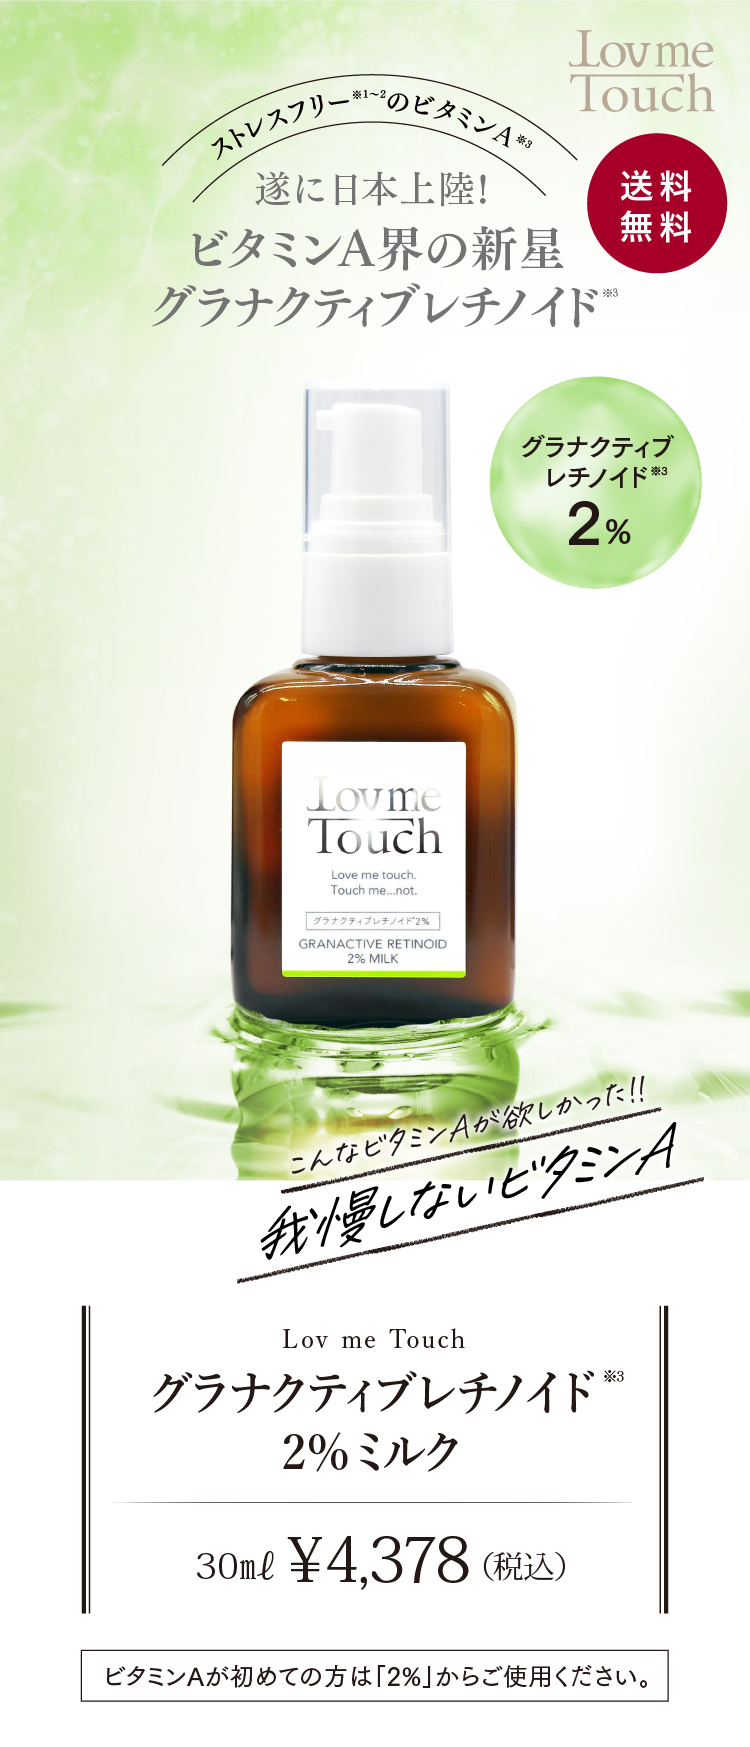 【通販】Lov me Touch ラブミータッチ グラナクティブレチノイド2